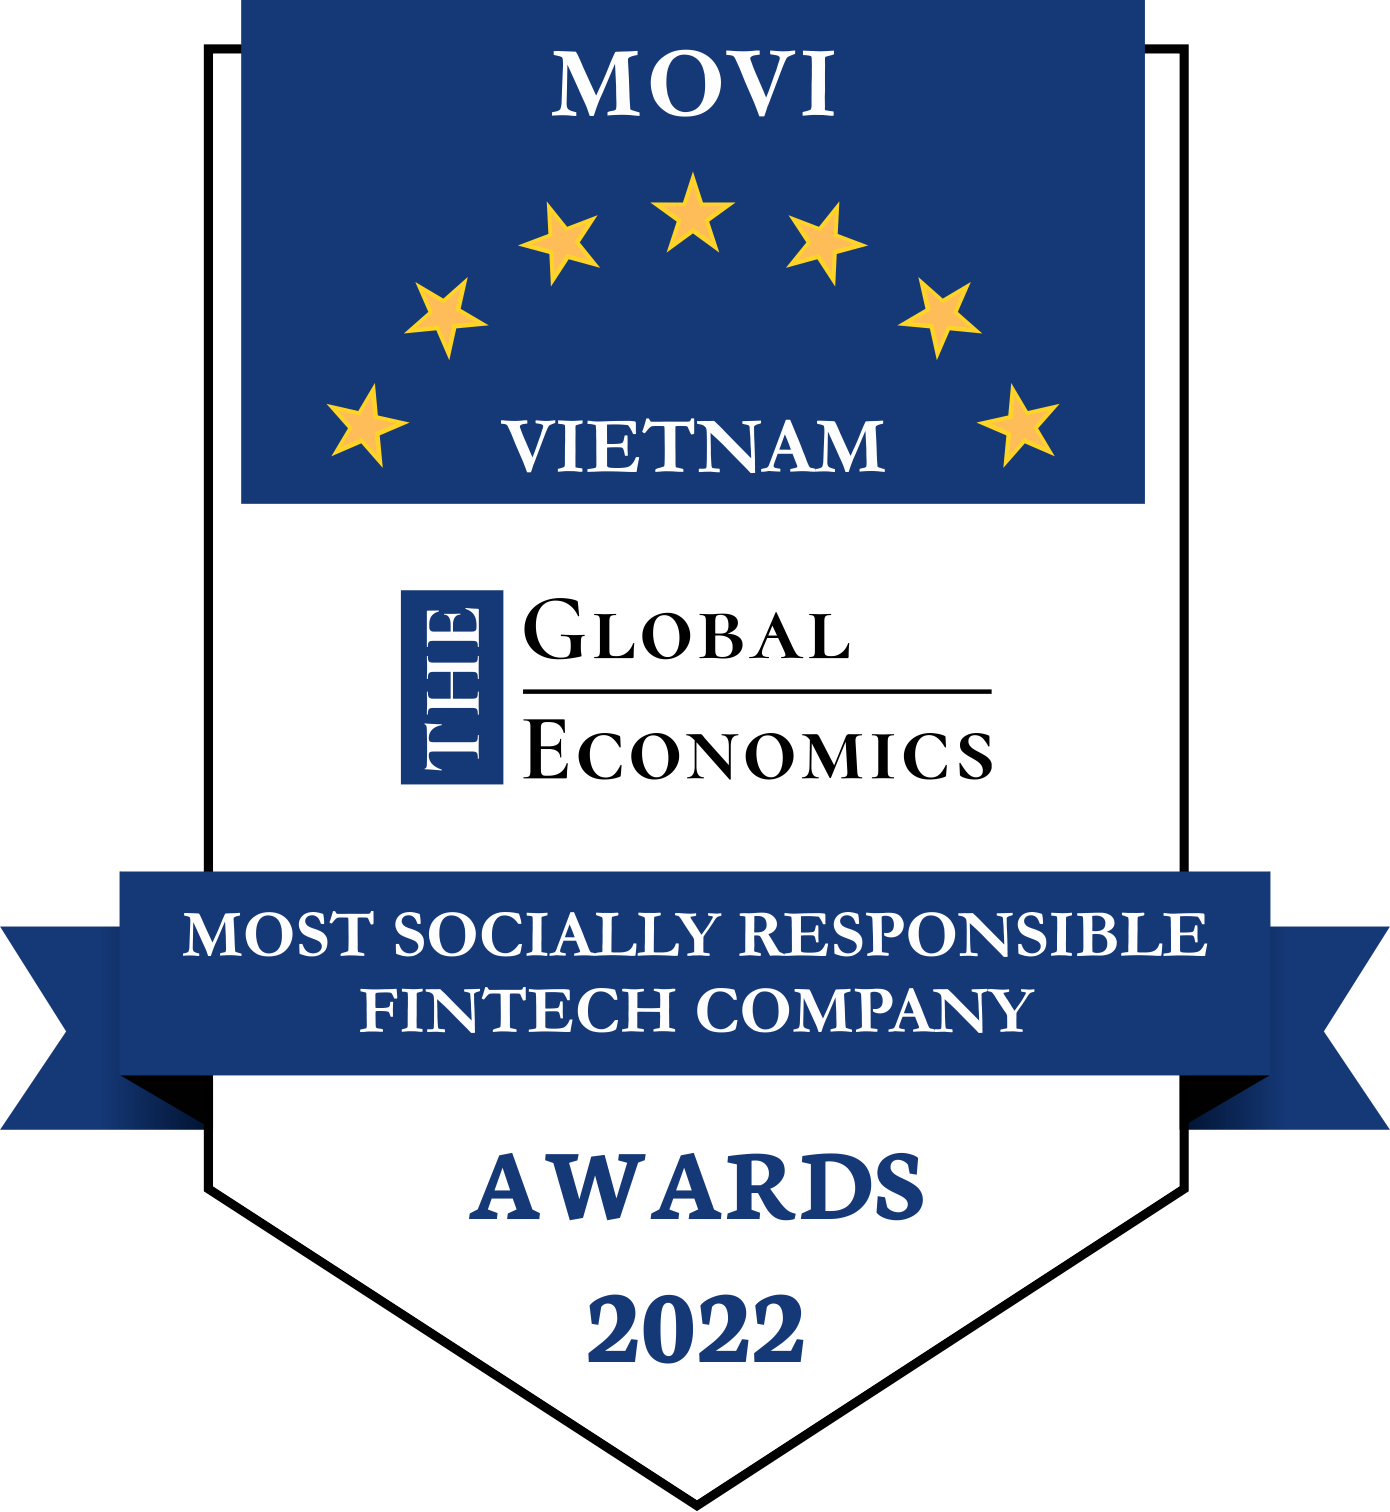 The Global Economics Awards